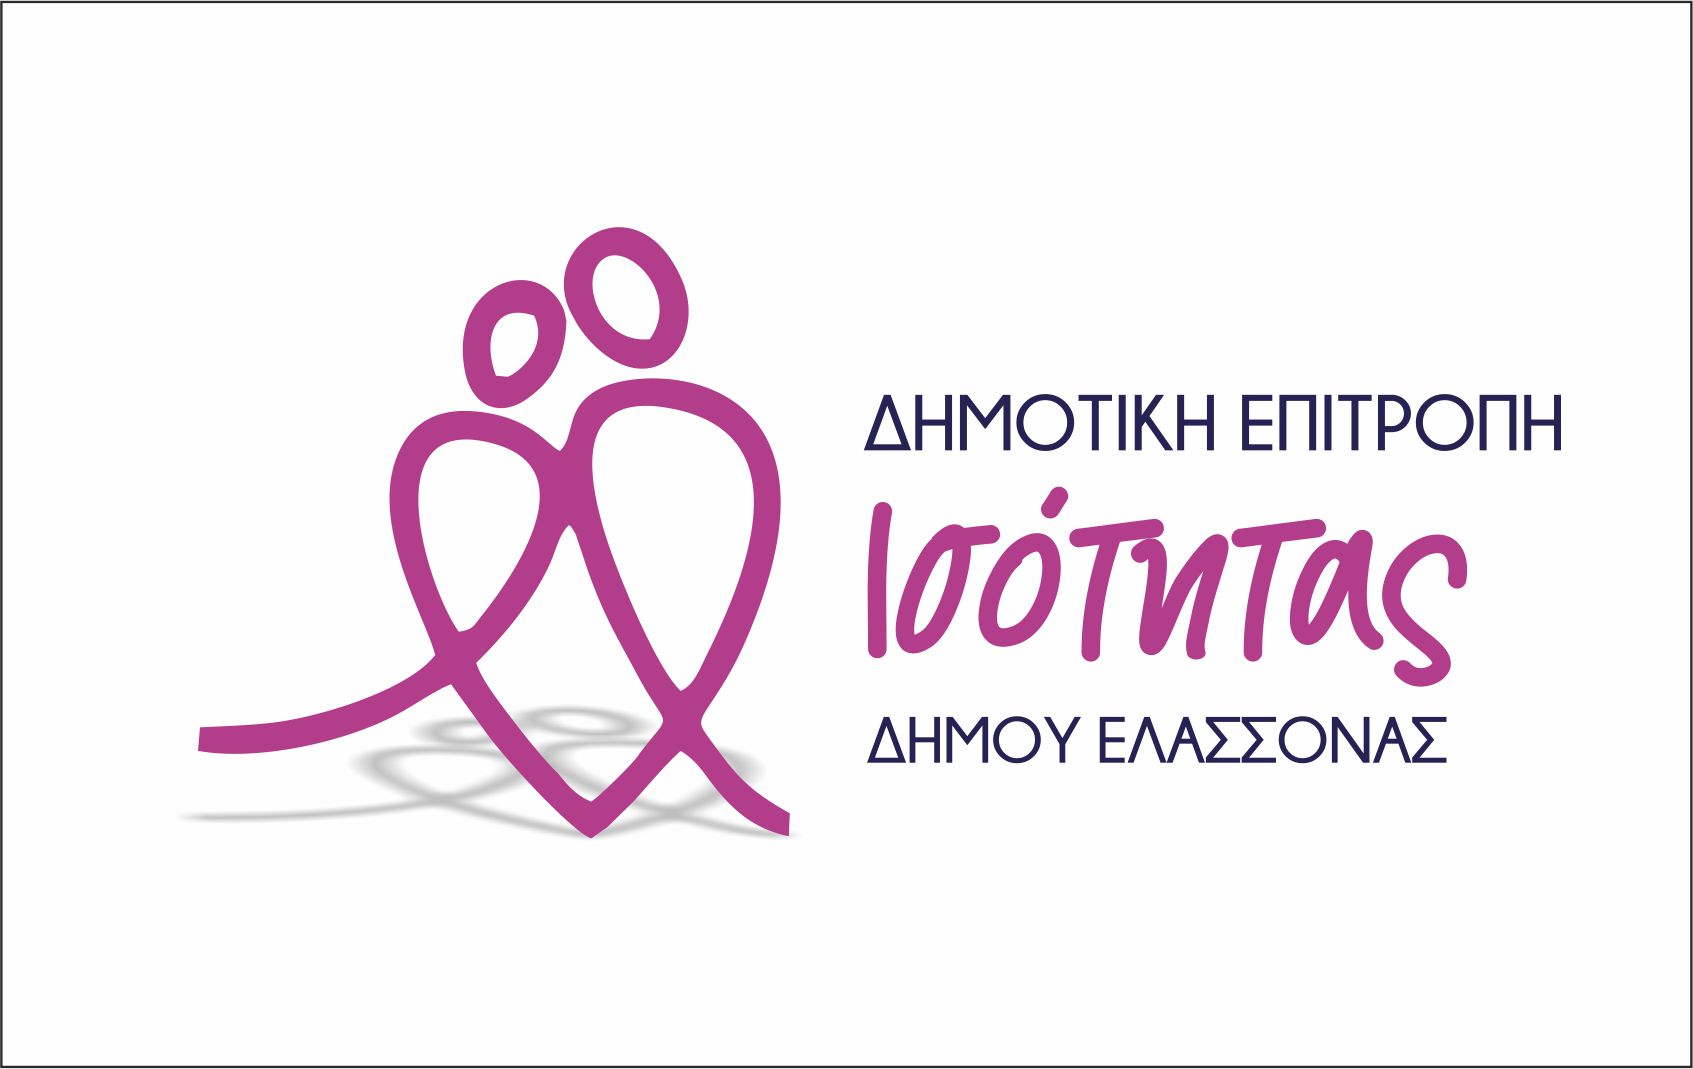 Δήμος Ελασσόνας: Συστήνει Επιτροπή Ισότητας – Ανοιχτή πρόσκληση συμμετοχής σε όλες τις γυναίκες